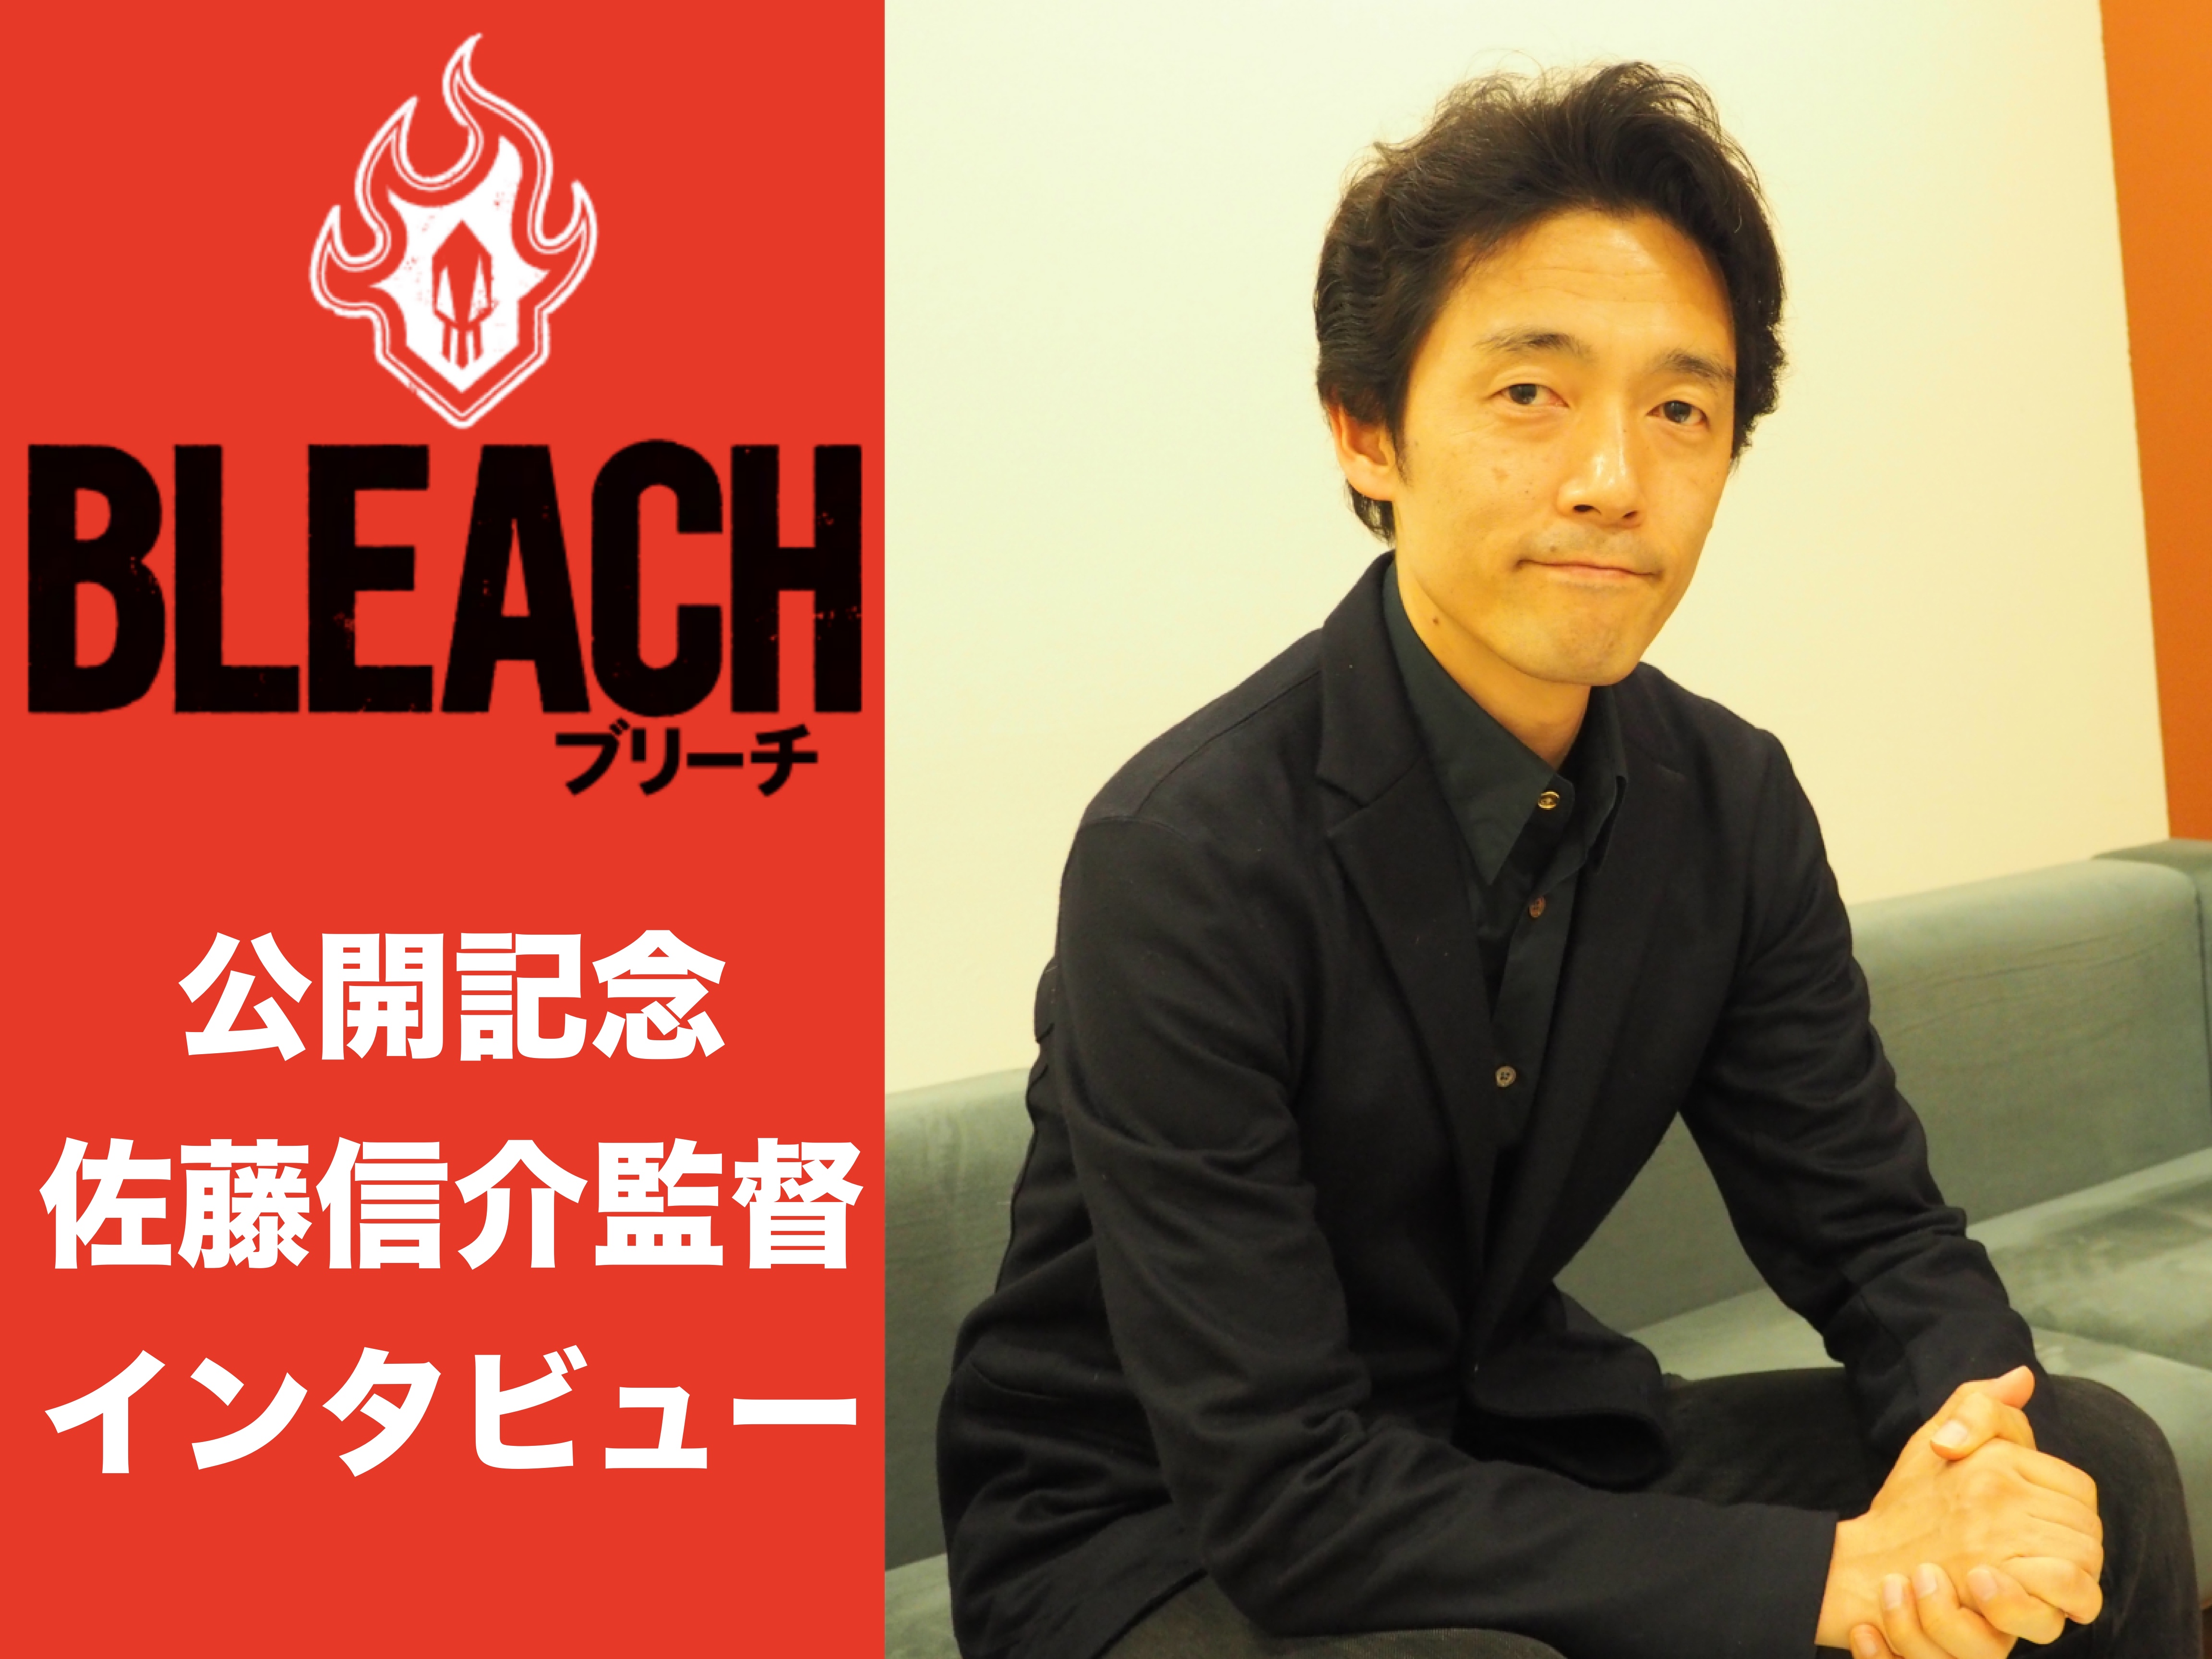 映画『BLEACH』佐藤信介監督インタビュー「そこにあるとしか思えないようなスーパーリアリズムを」